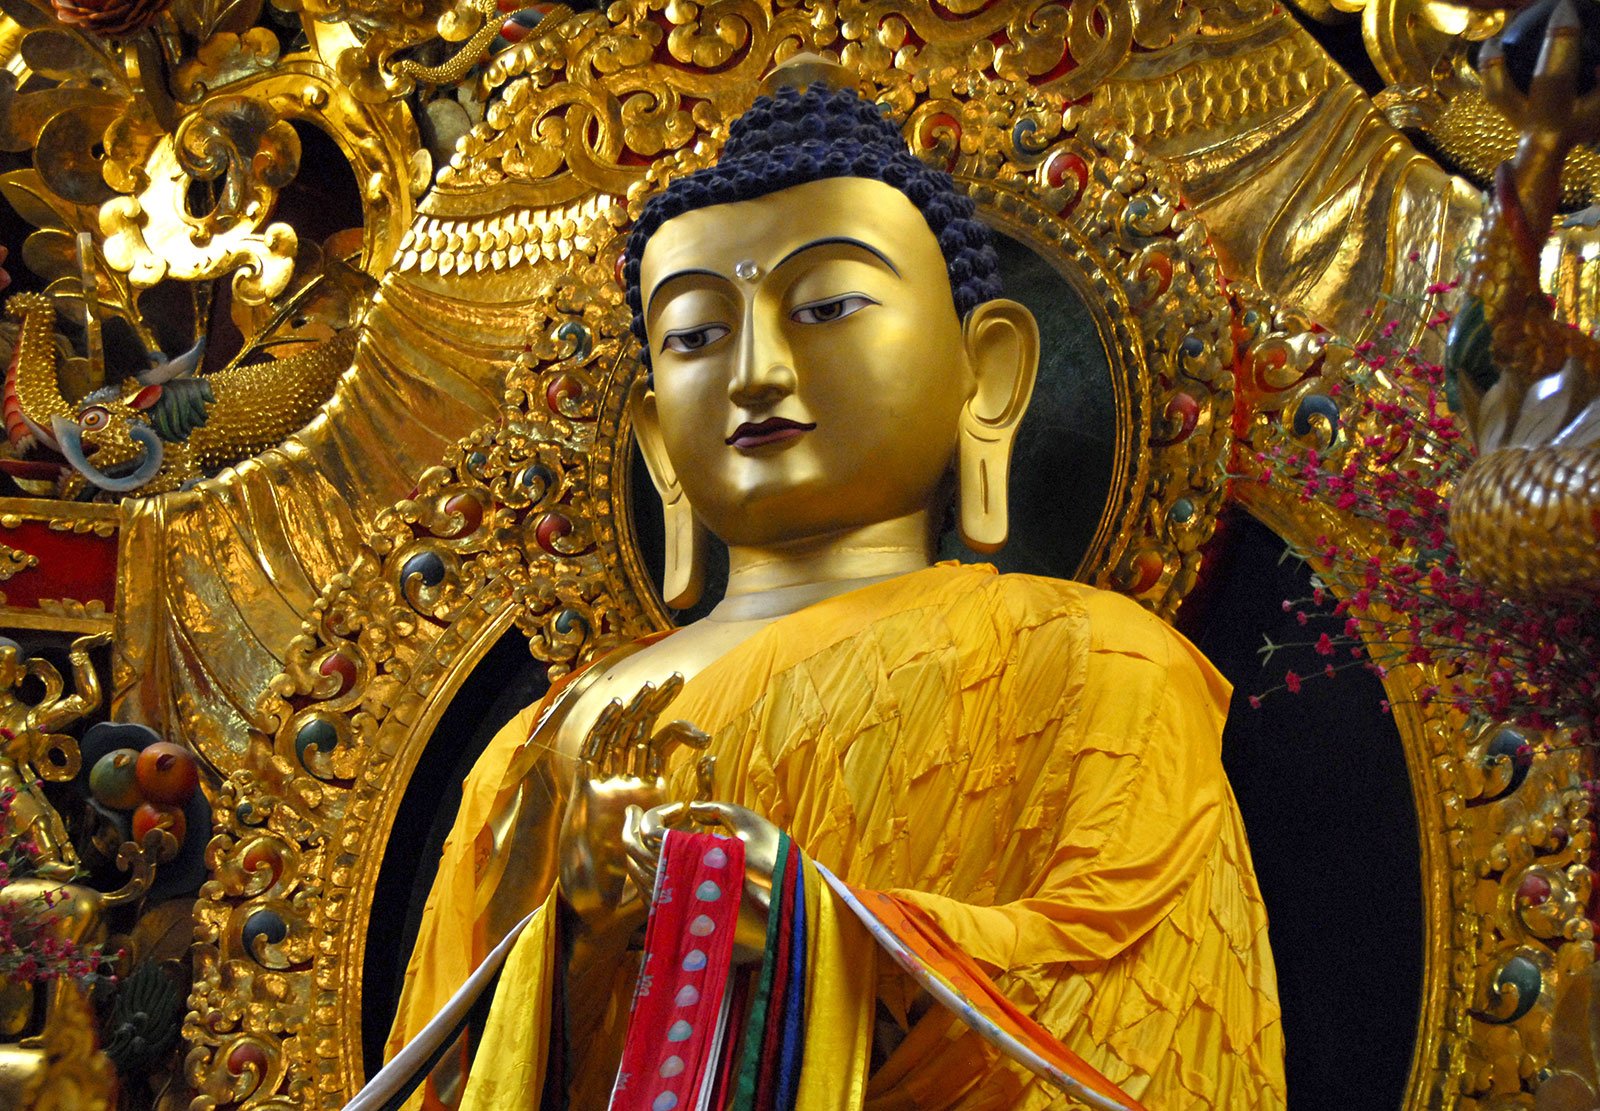 Đối với những đệ tử Phật, có căn cơ quán sát nhân duyên, thì Phật dạy 12 nhân duyên phát khởi ra luân hồi, để các đệ tử ấy tu tập theo và chứng quả Duyên giác.